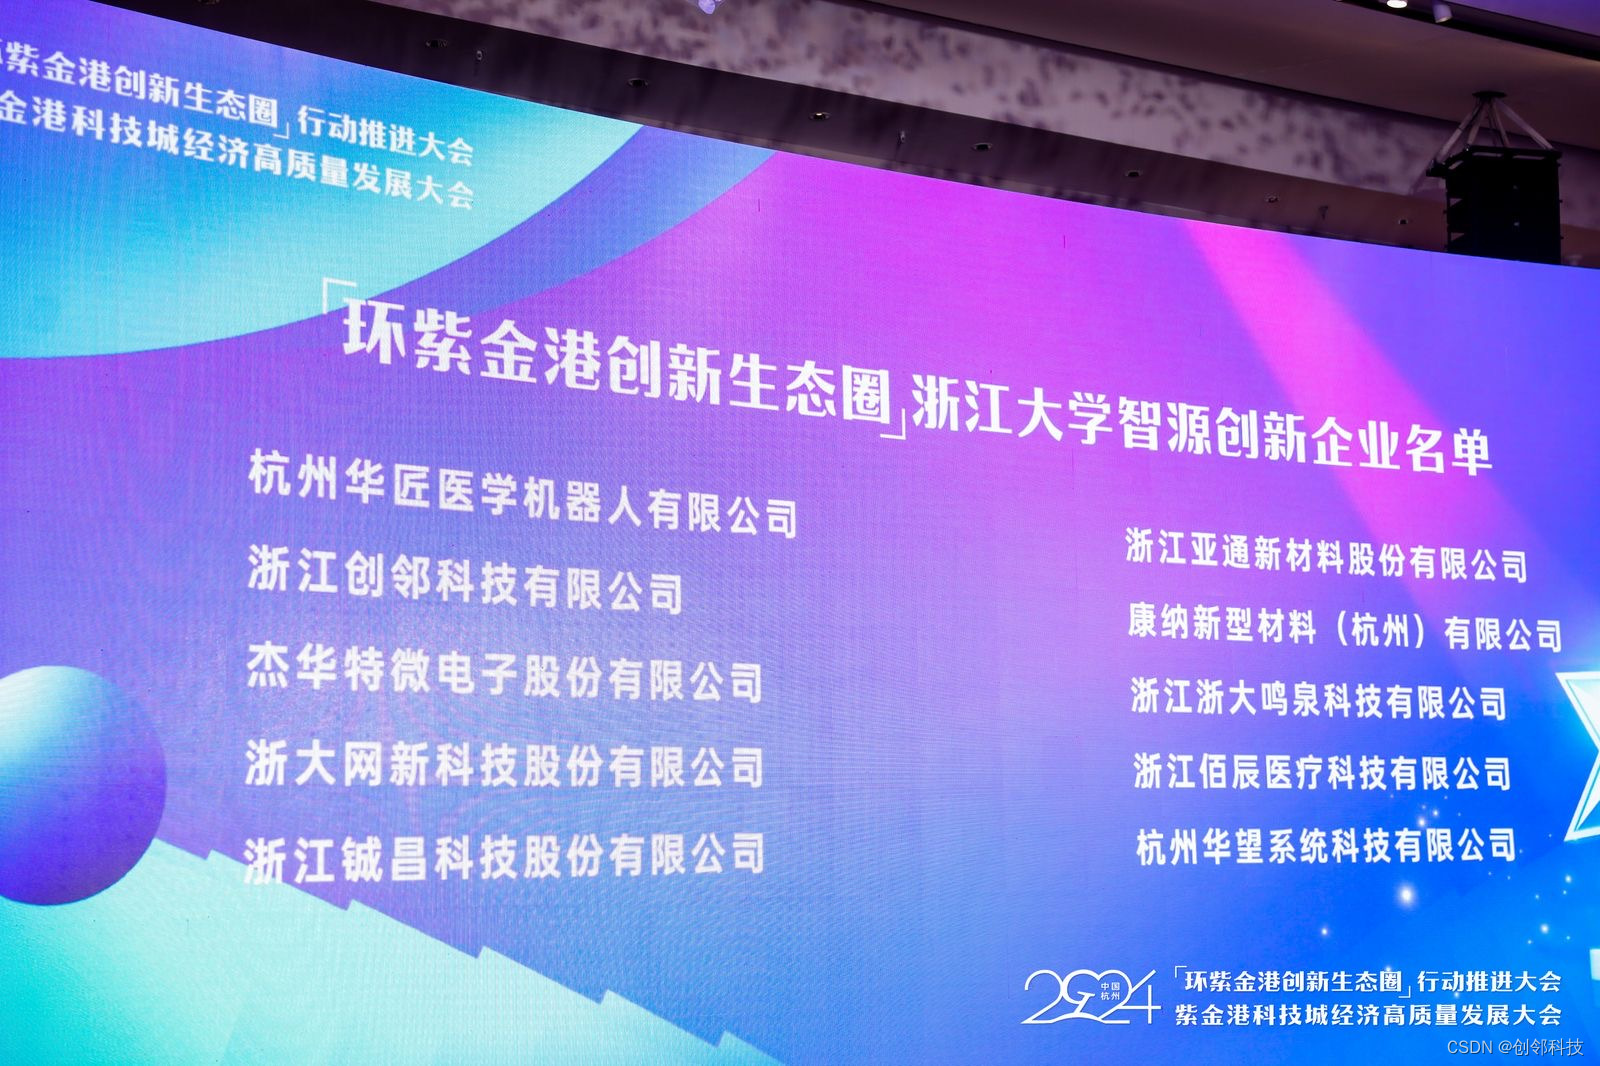 图 | “浙江大学智源创新企业”颁奖现场